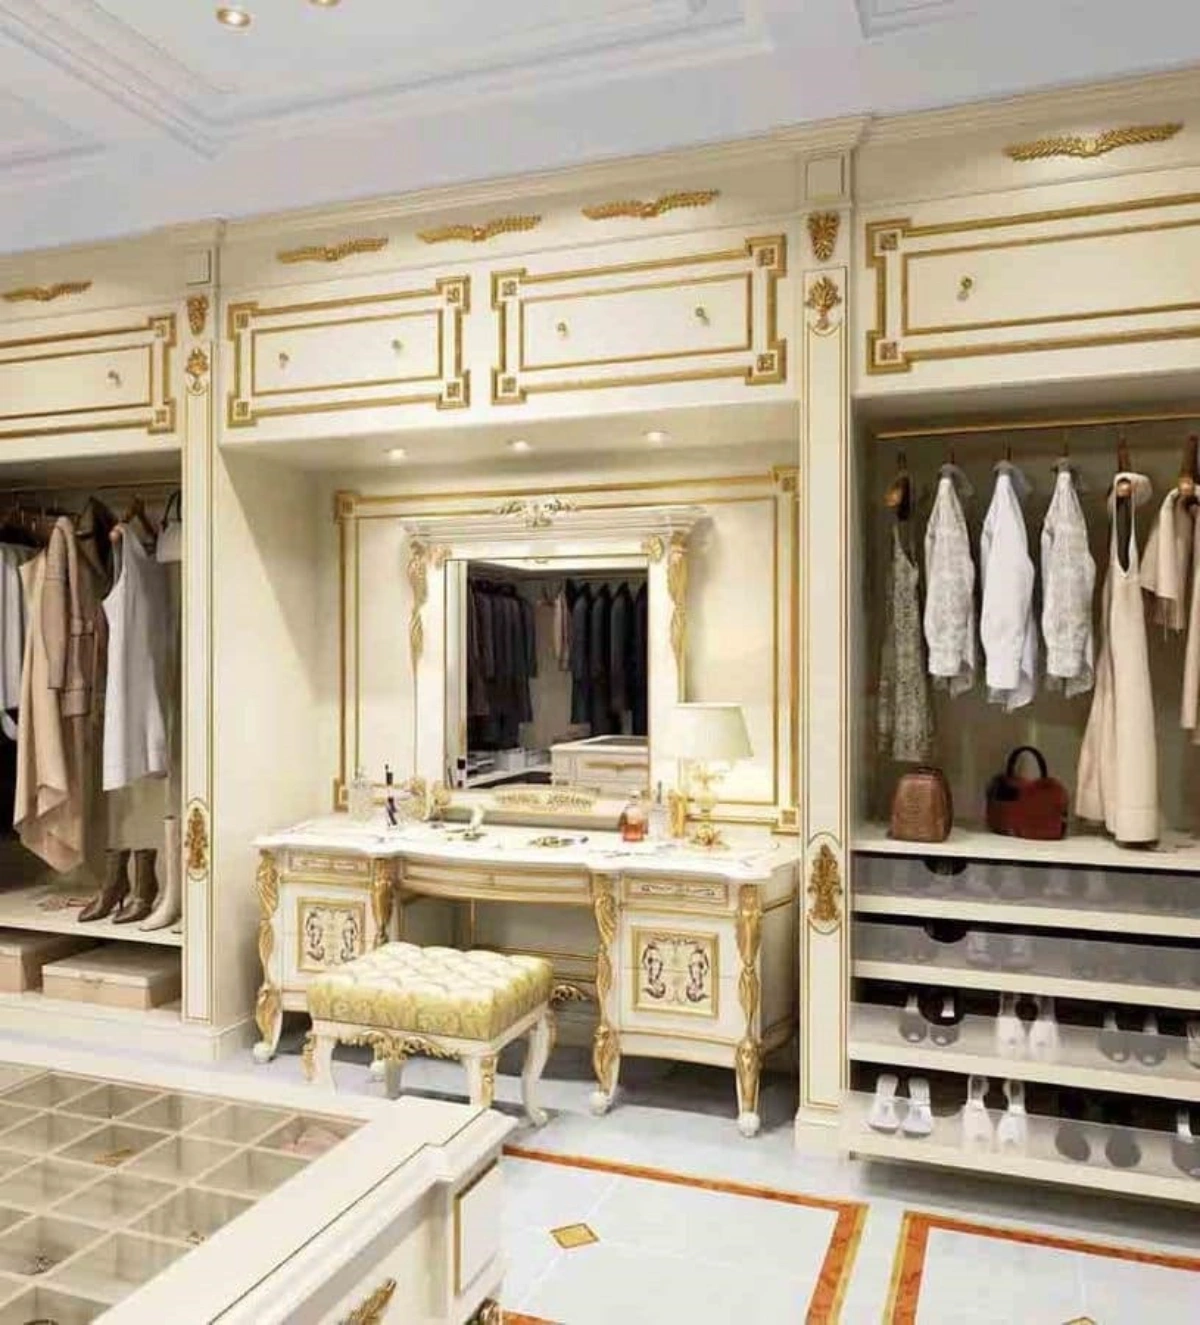 کلوزت روم سفید طلایی به سبک اشرافی کلاسیک دارای میز آرایش و آینه